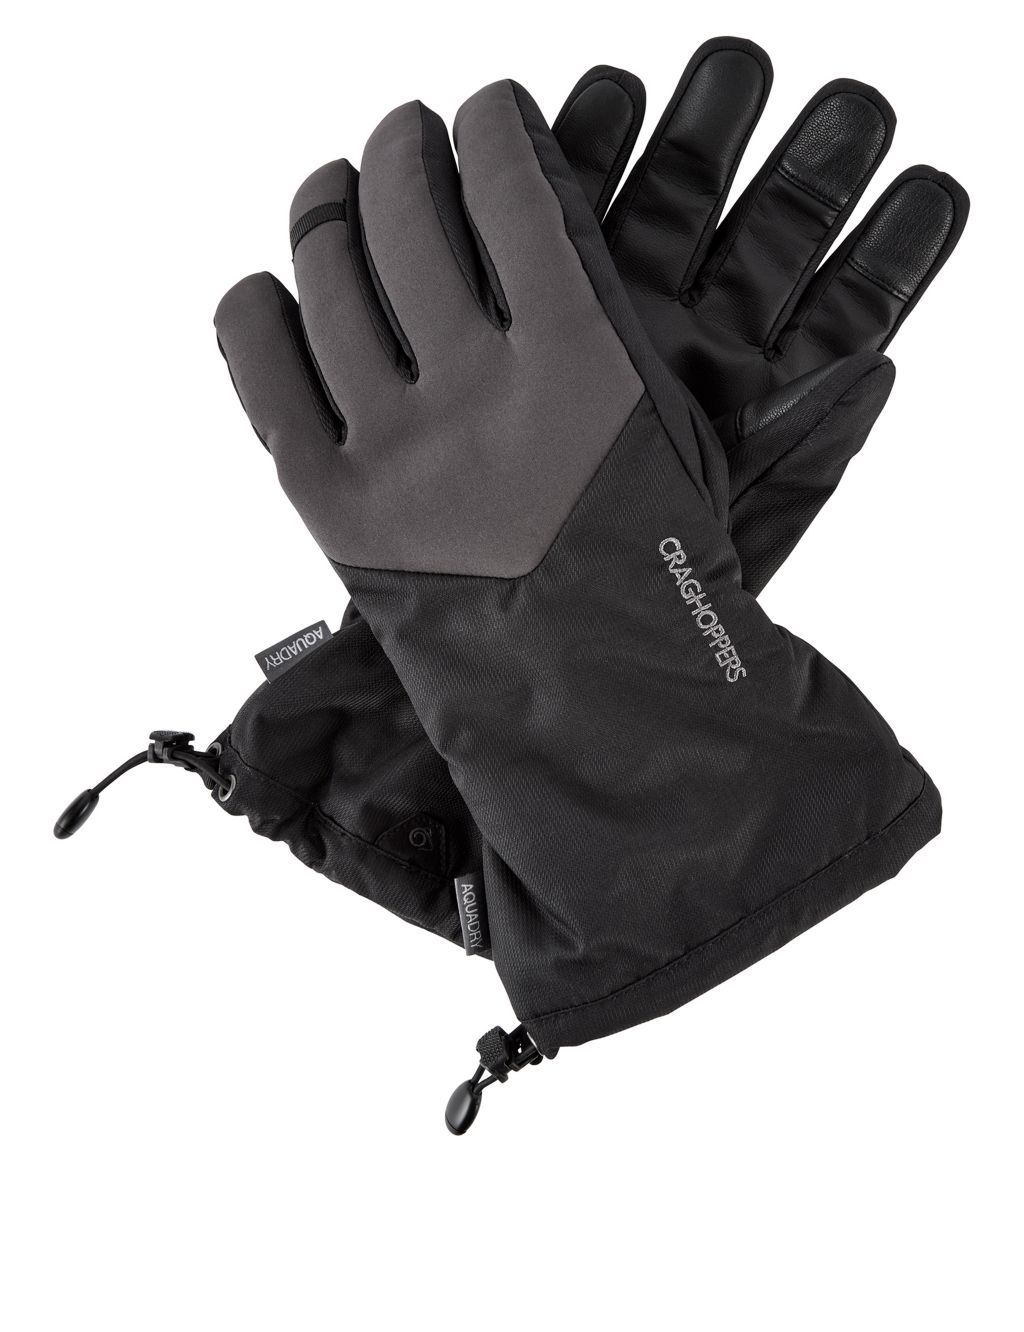 Thermal Waterproof Gloves 1 of 1